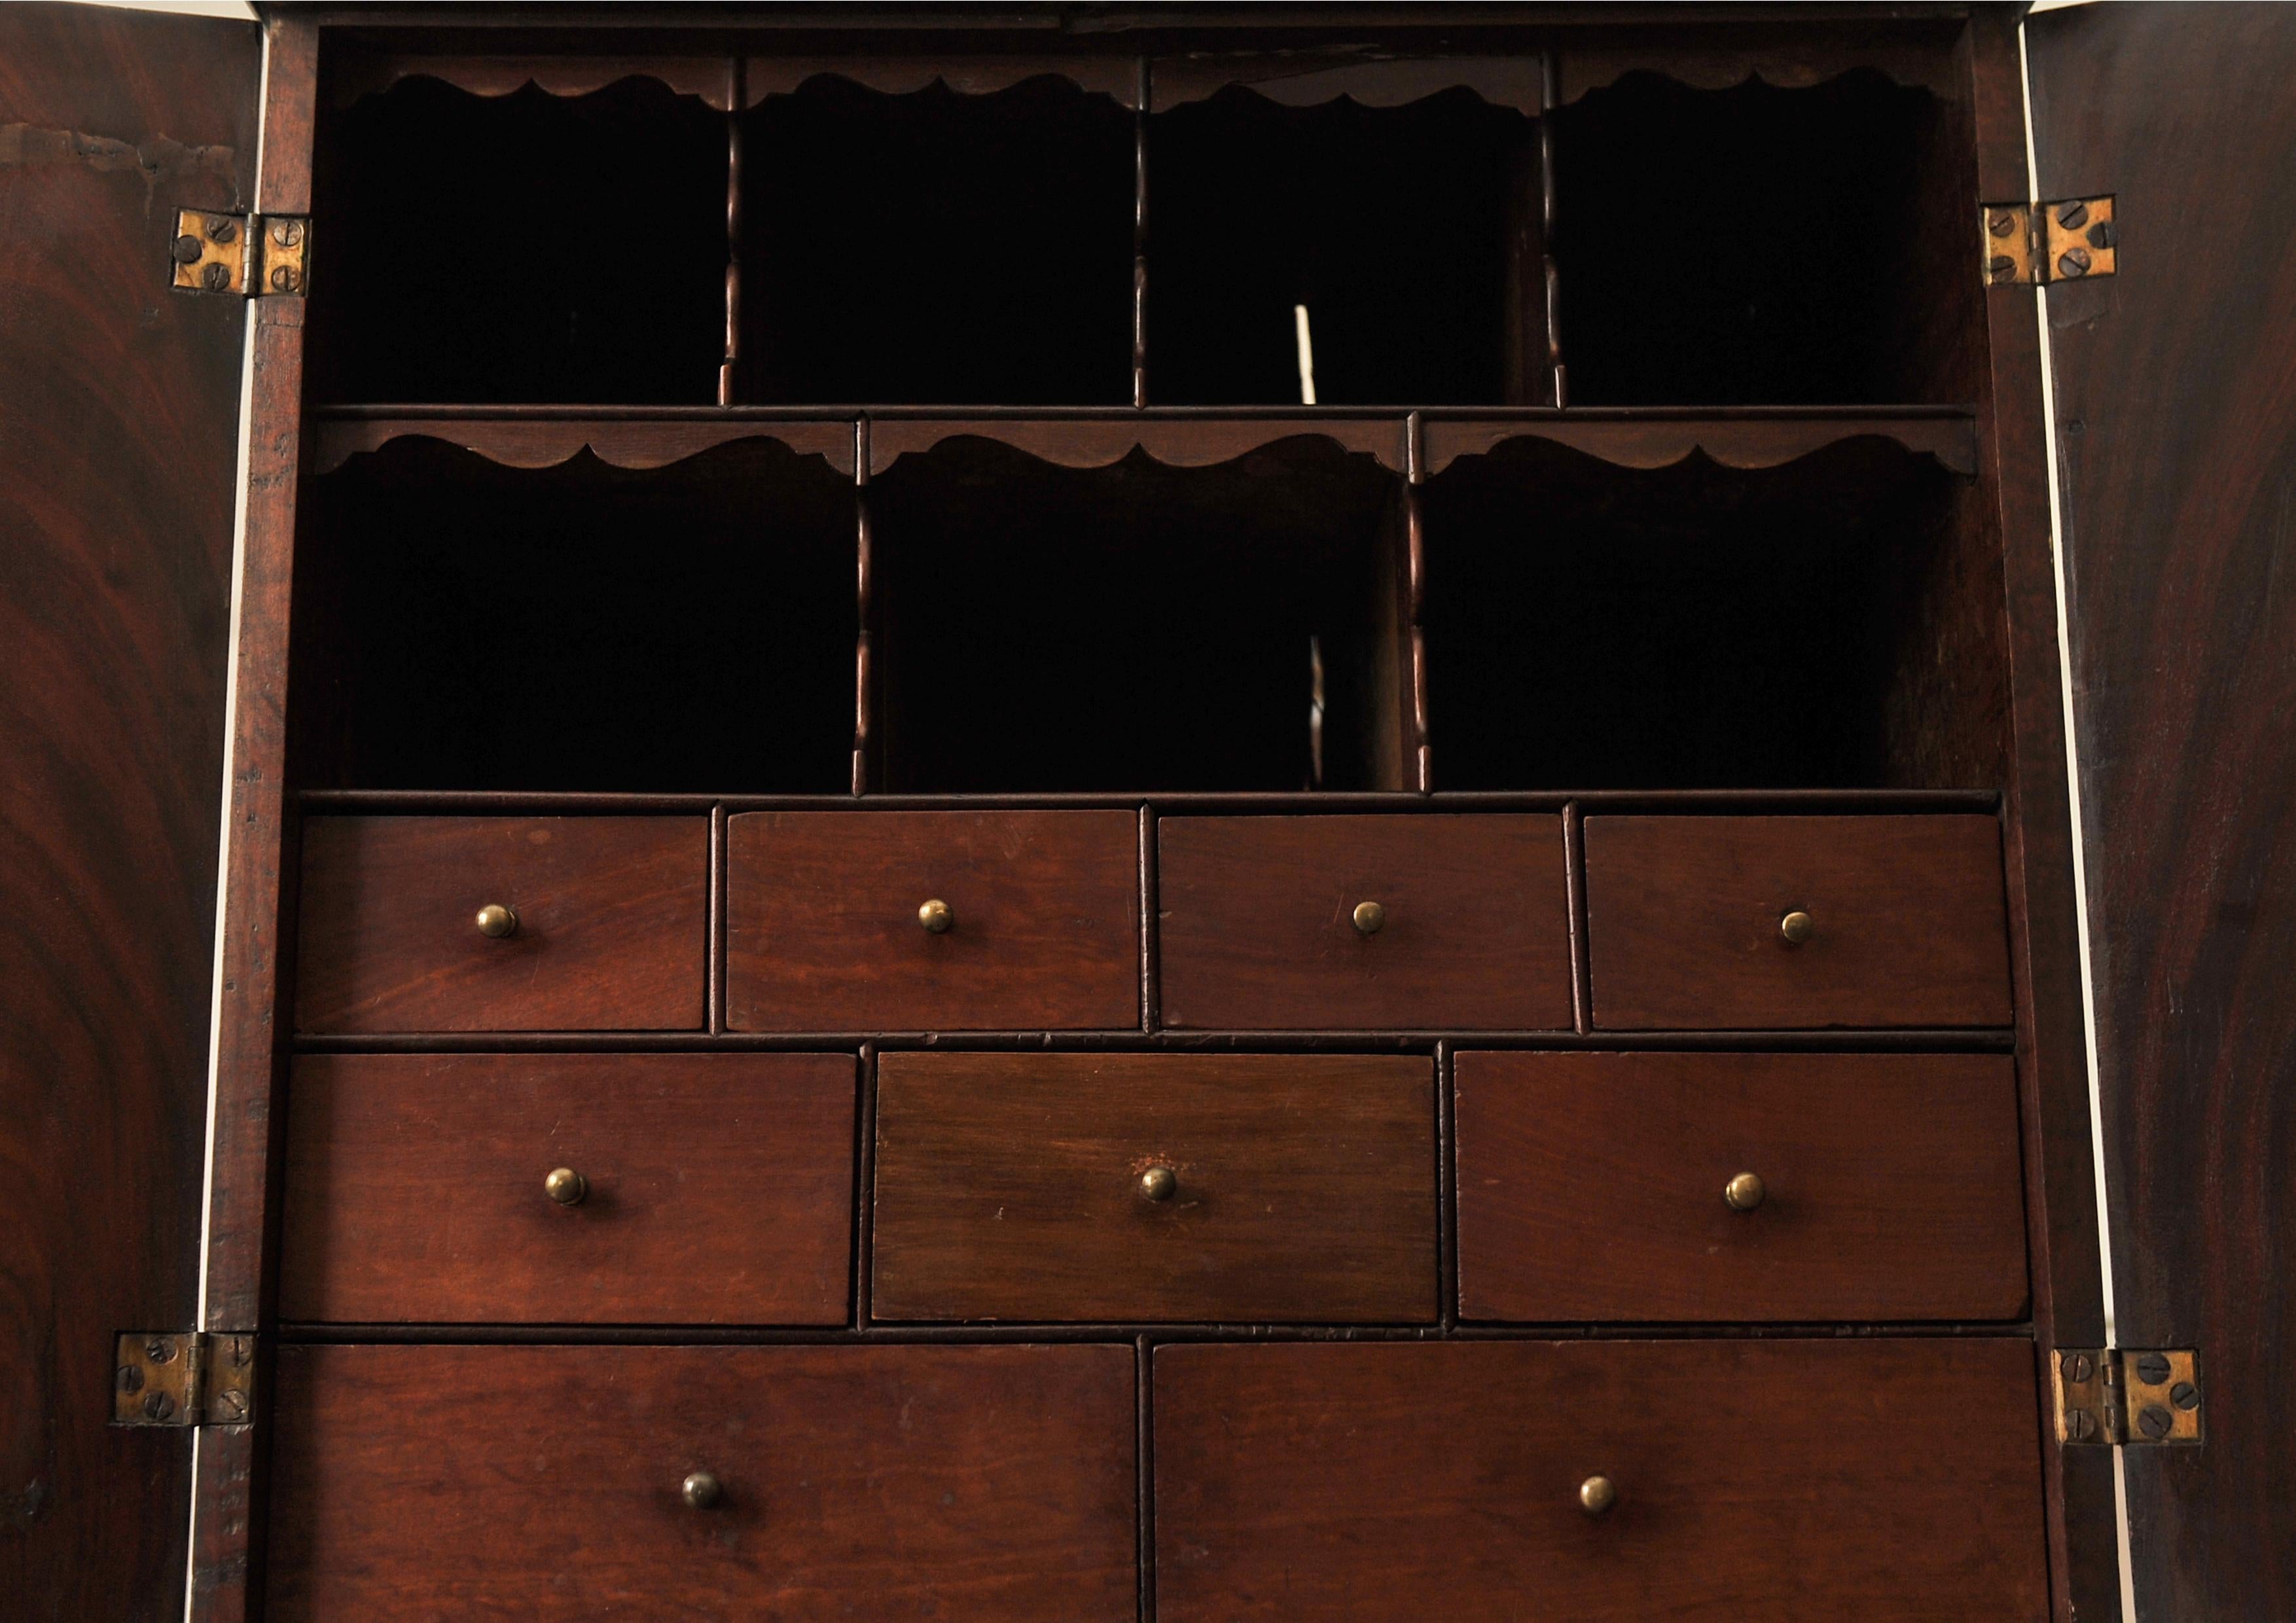 Rare cabinet de table à deux portes en acajou et laiton du XVIIIe siècle, équipé de casiers et de tiroirs ajustés.

Ébénisterie de qualité faite à la main, chaque tiroir étant construit avec des queues d'aronde faites à la main.

L'article est livré